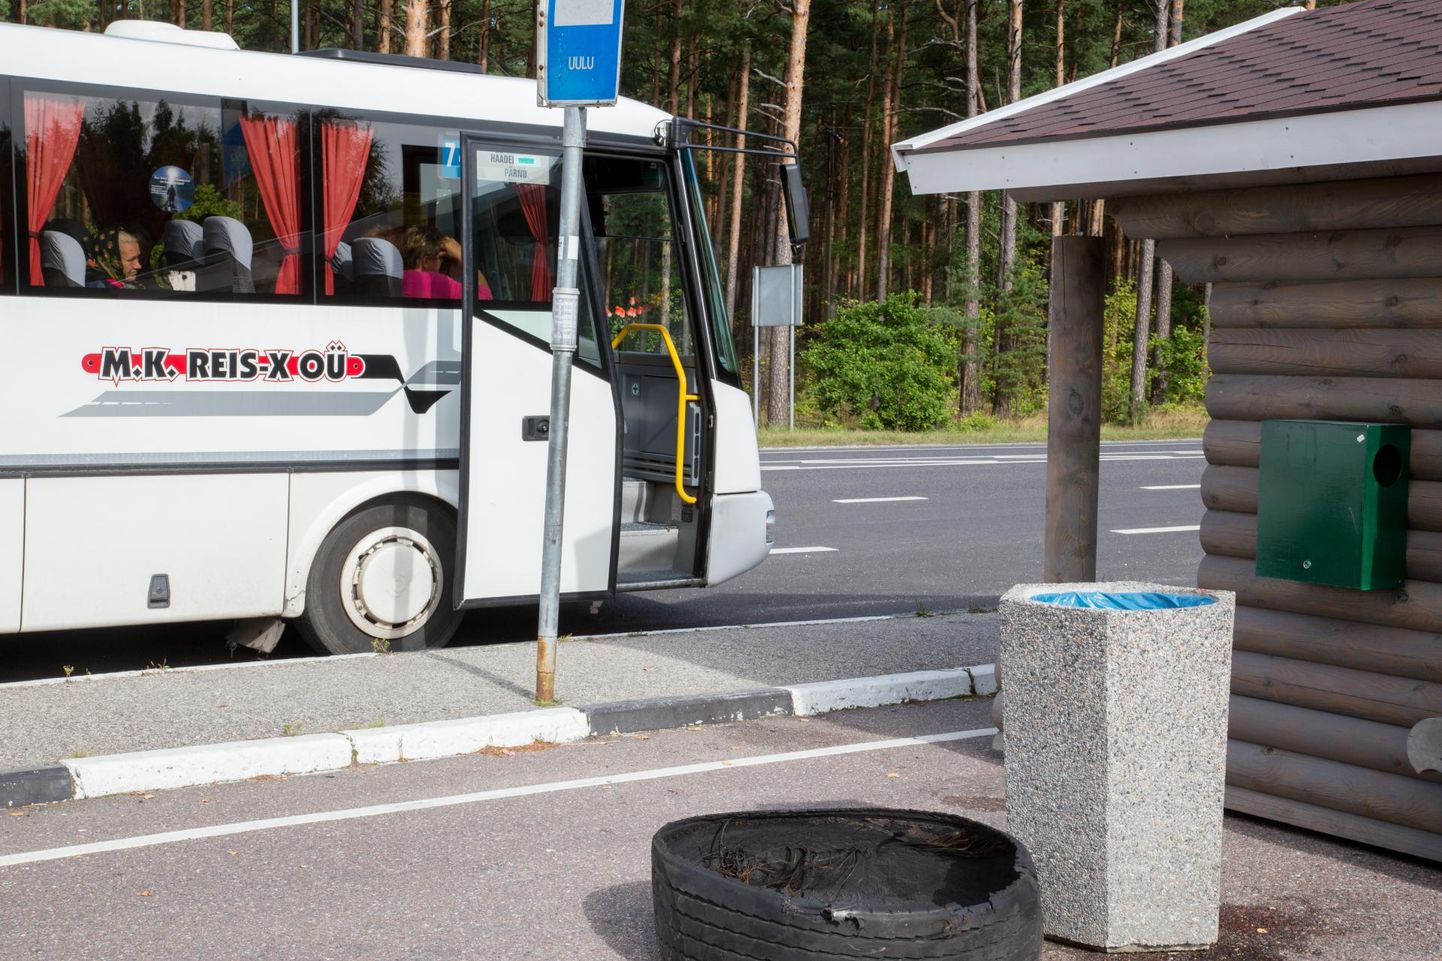 Tasuta bussisõit on toonud kaasa liinide optimeerimise, mistõttu maaliinide kasutajatel tuleb nuputada, kuidas sihtpunkti ja tagasi jõuda.